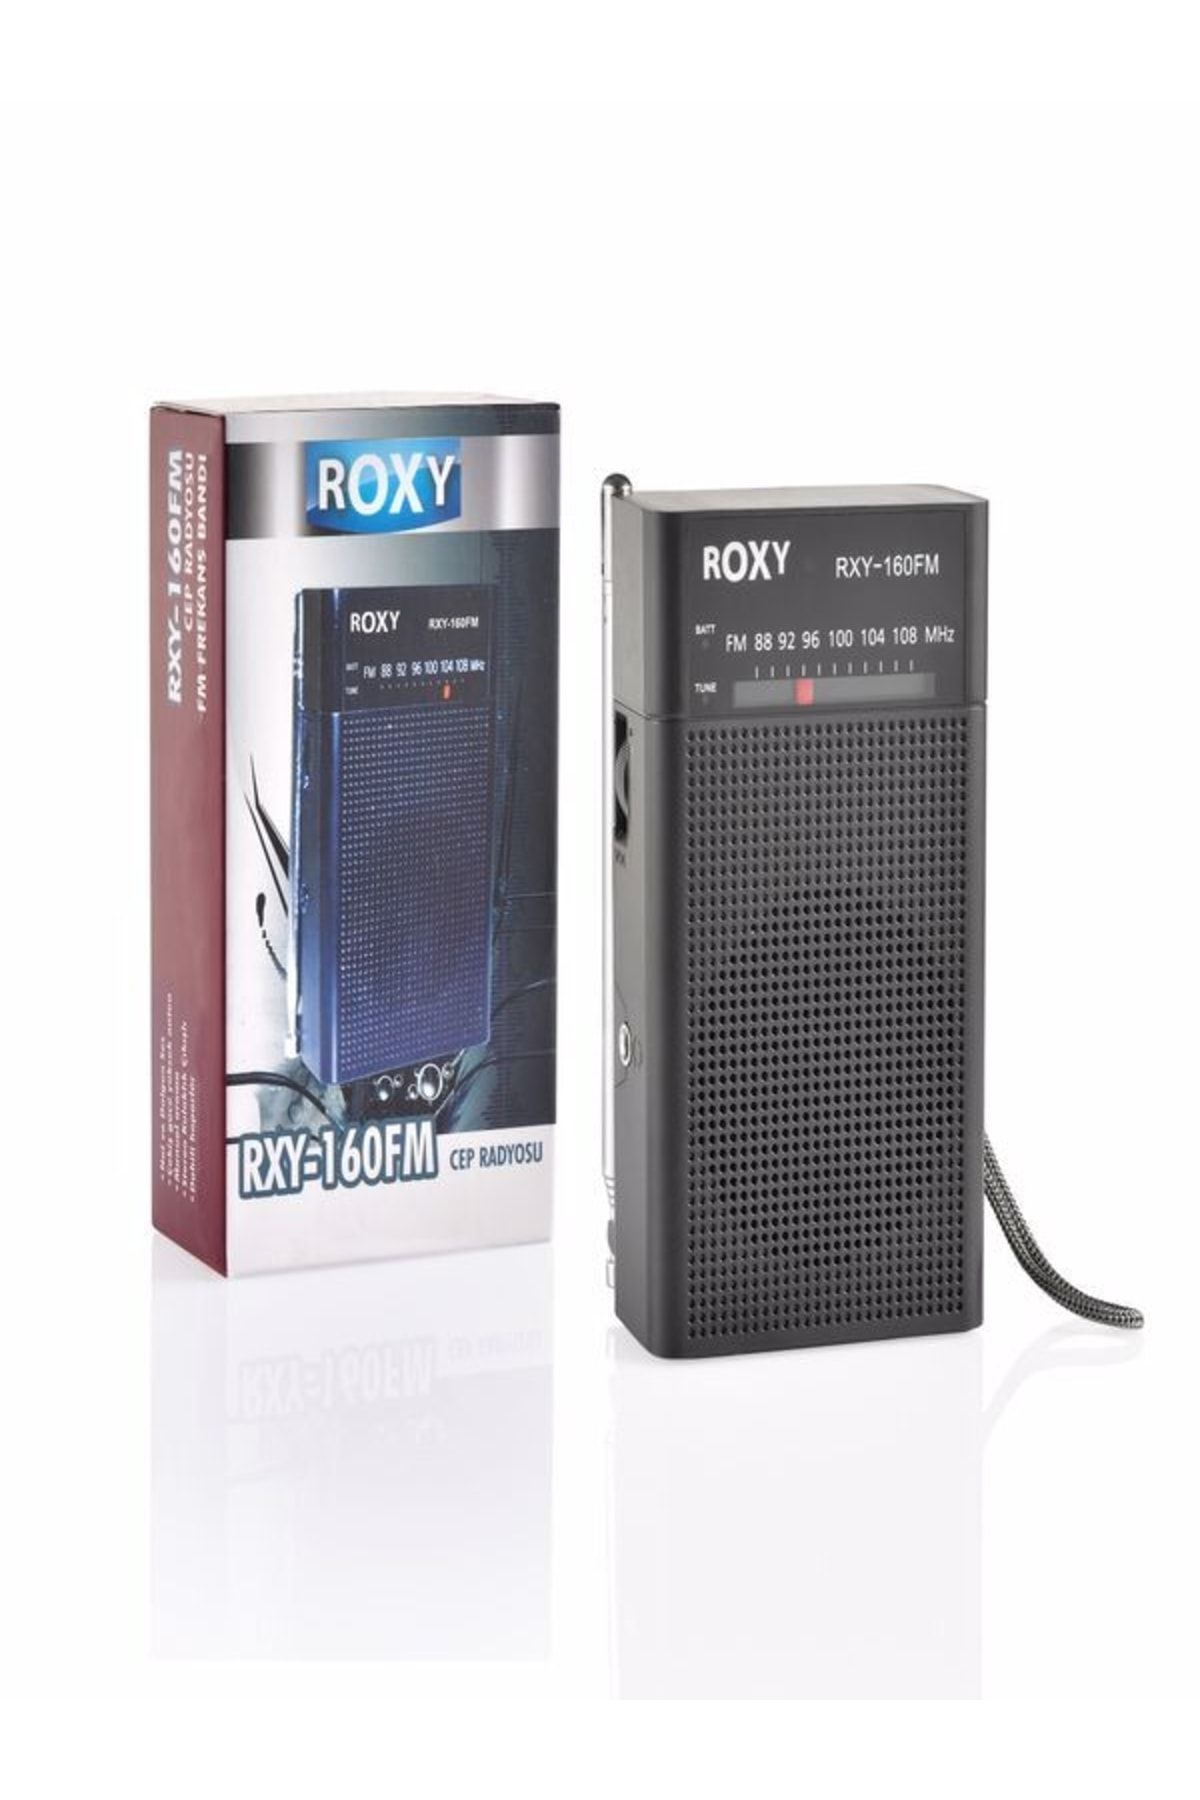 Roxy Rxy-160fm Cep Radyosu - Deprem Çantasına Uygun Taşınabilir Radyo